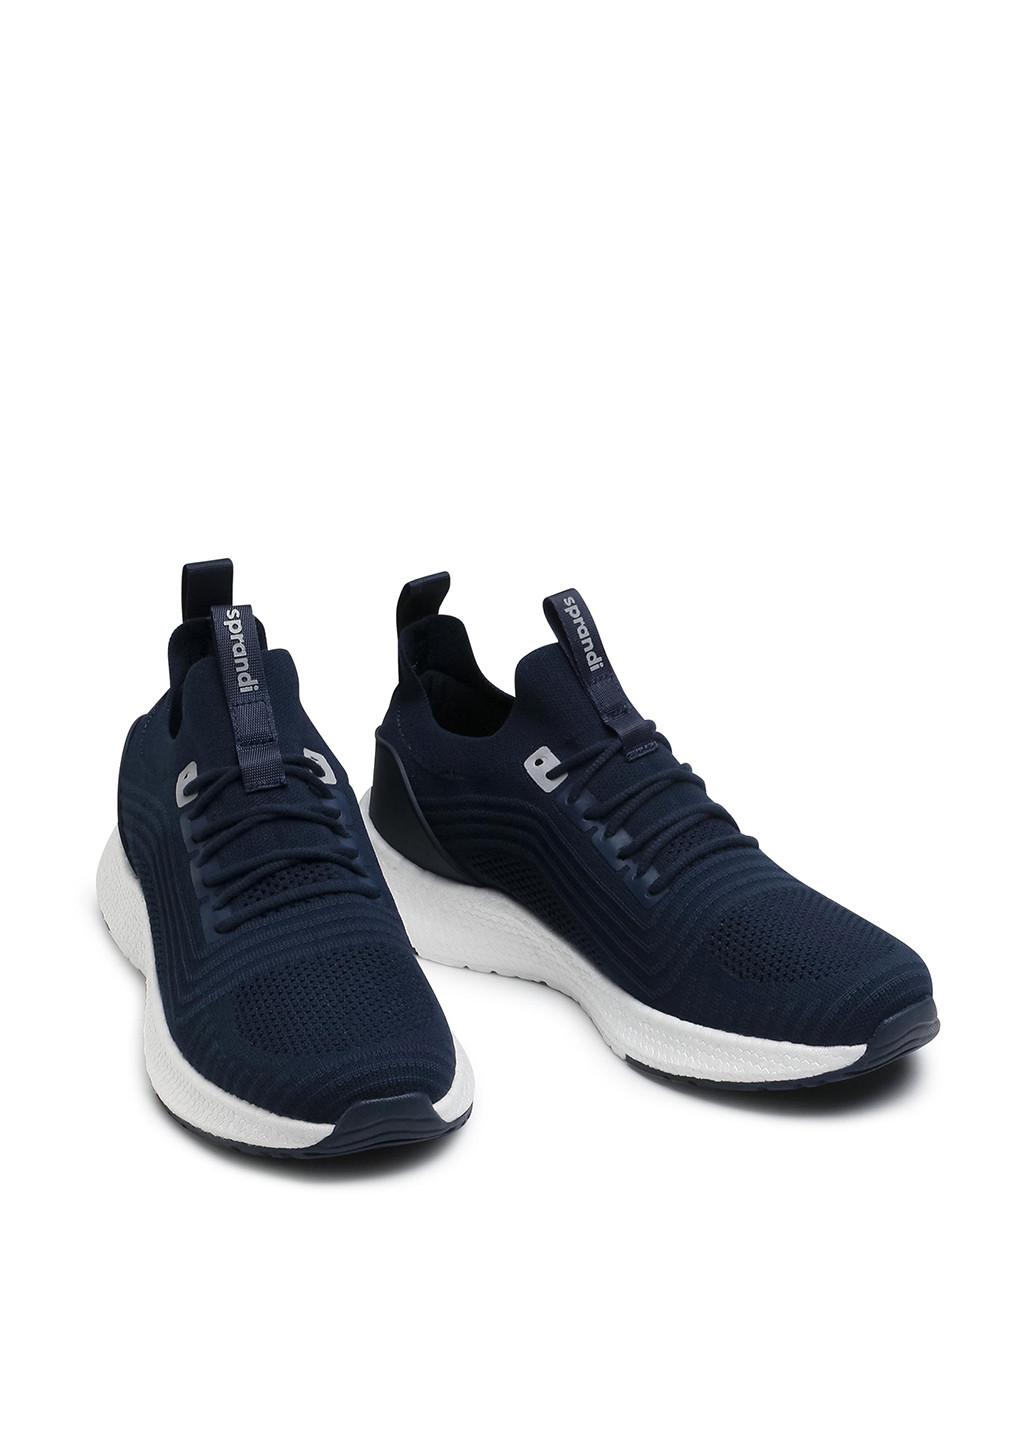 Темно-синие демисезонные кроссовки Sprandi MP07-01434-01